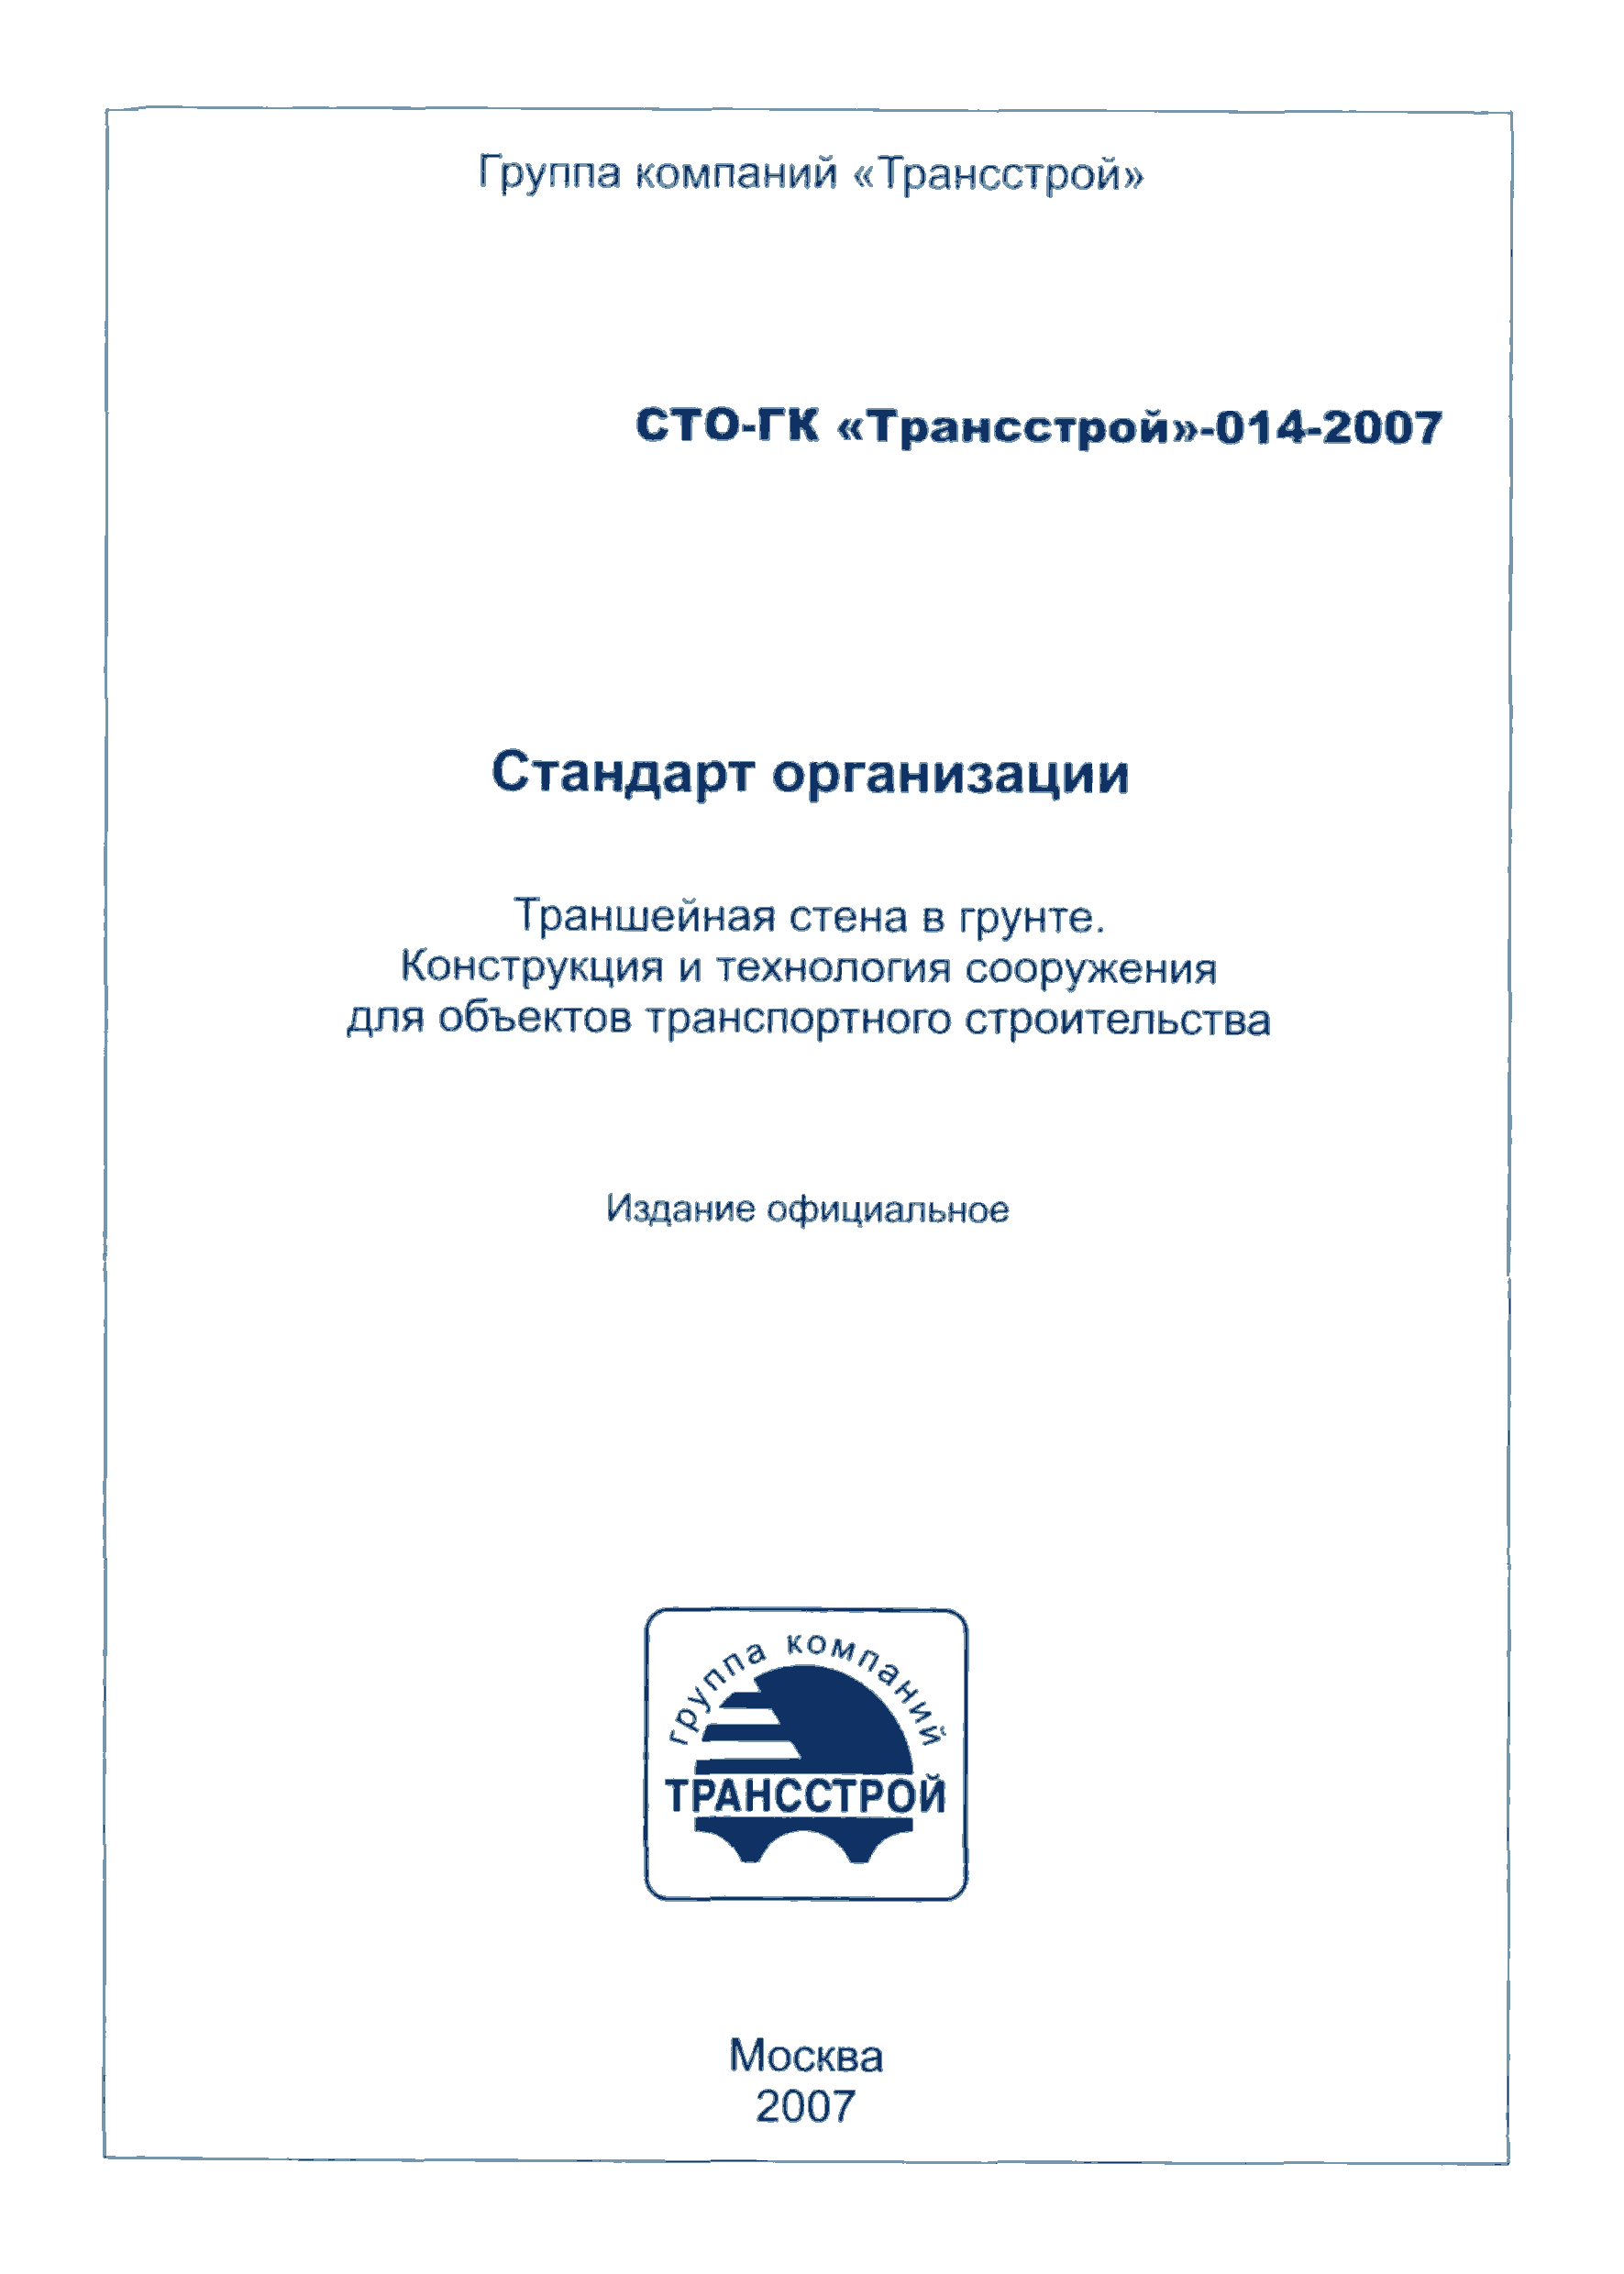 СТО-ГК "Трансстрой" 014-2007